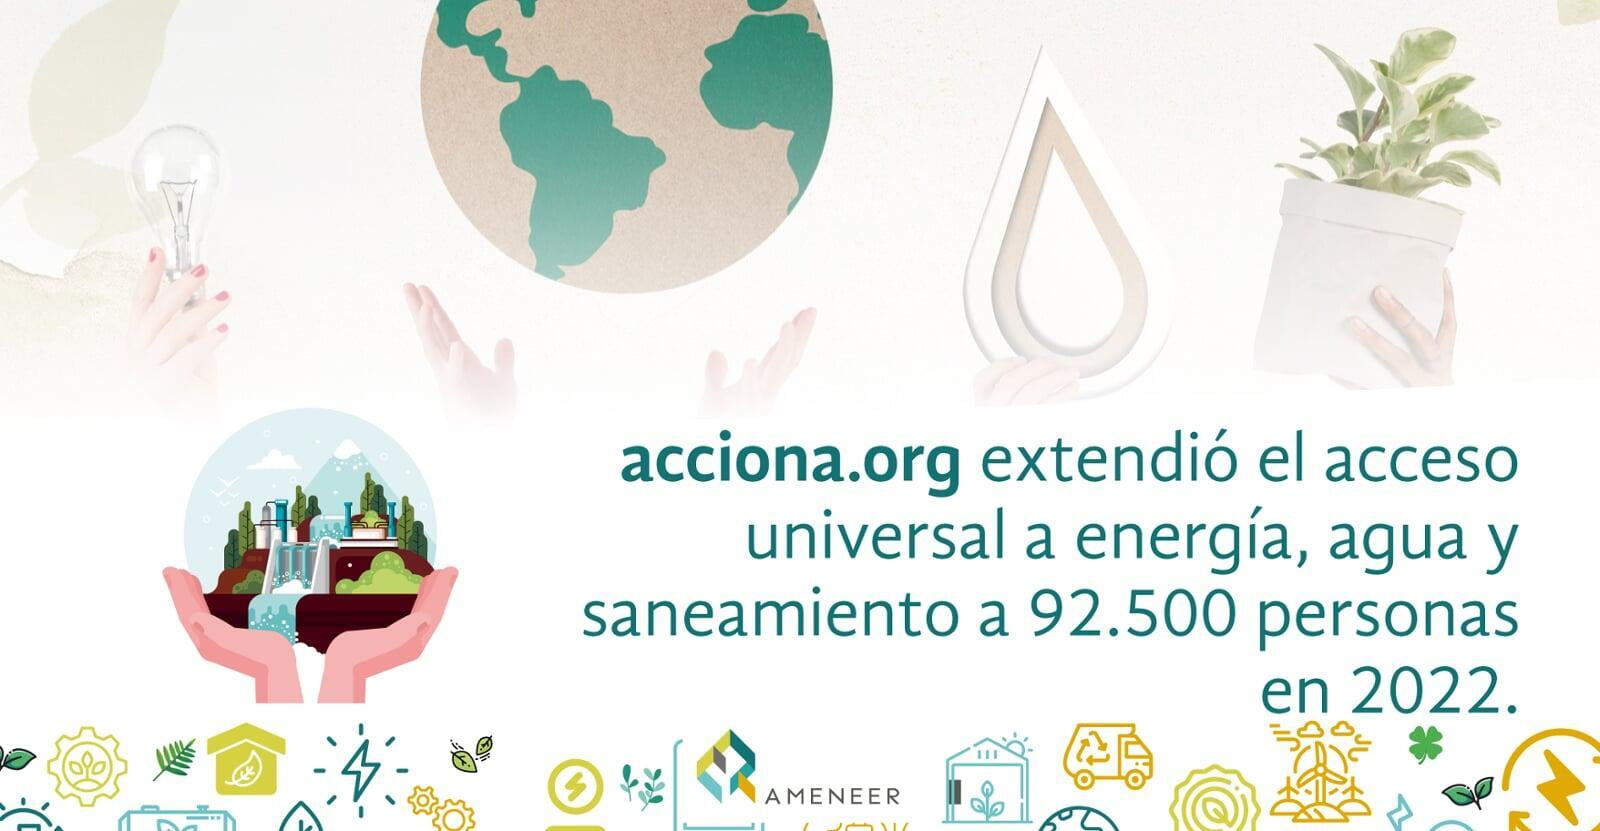 acciona.org extendió el acceso universal a energía, agua y saneamiento a 92.500 personas en 2022